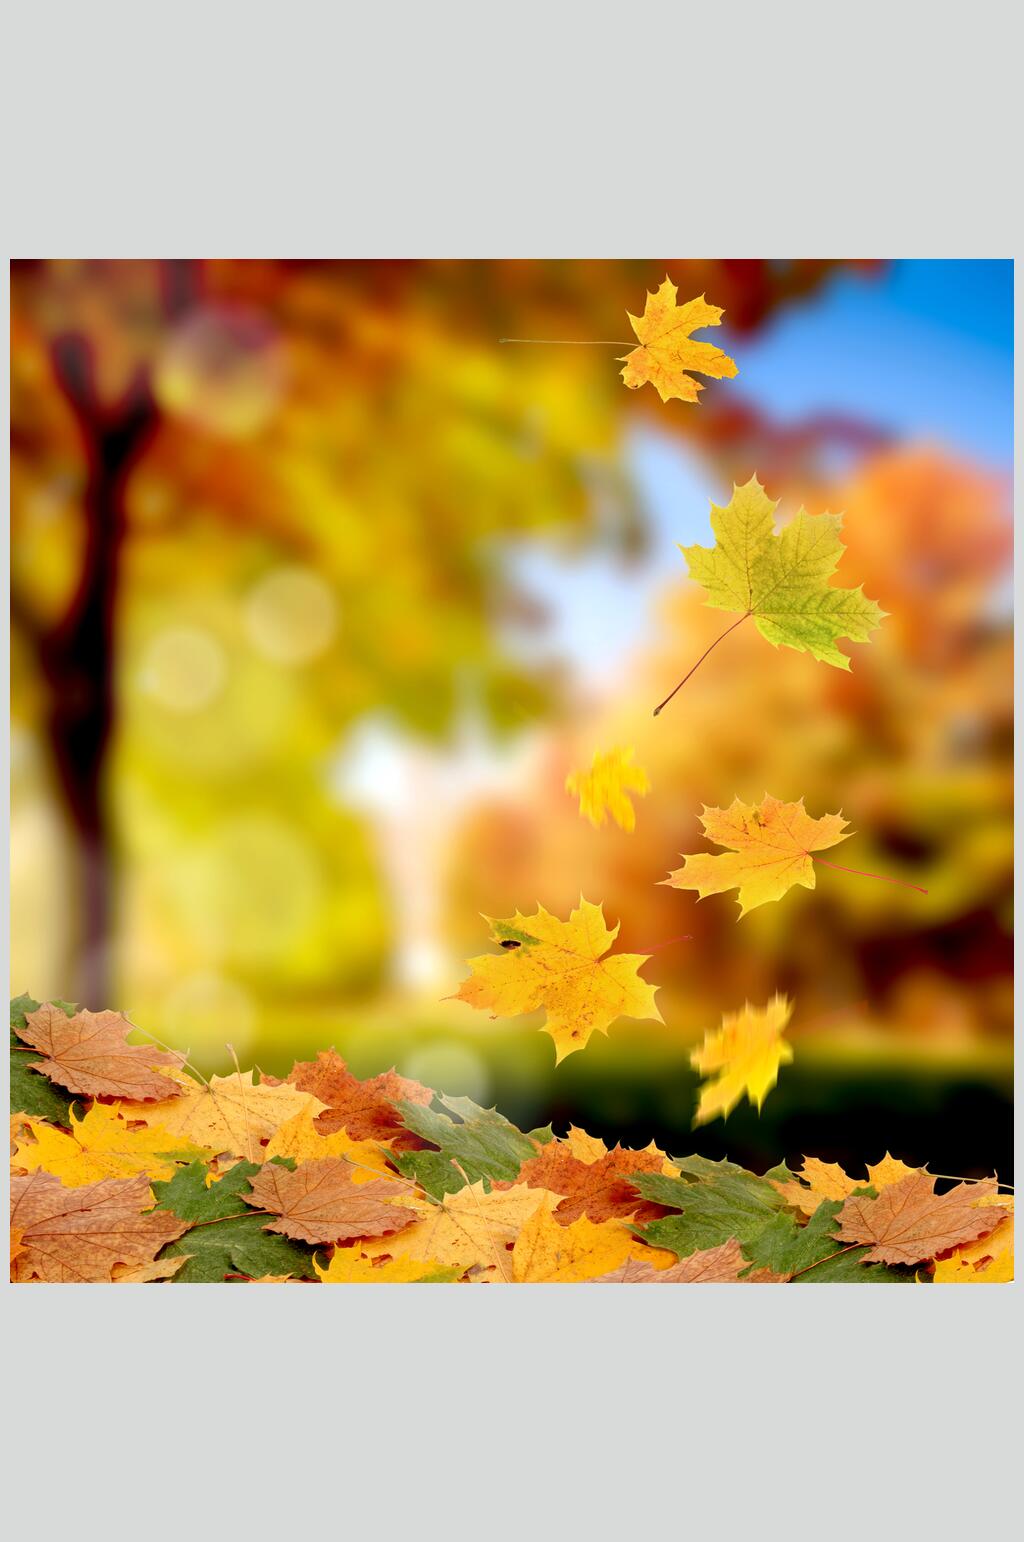 众图网独家提供秋天落叶风景图片落叶阳光摄影图素材免费下载,本作品